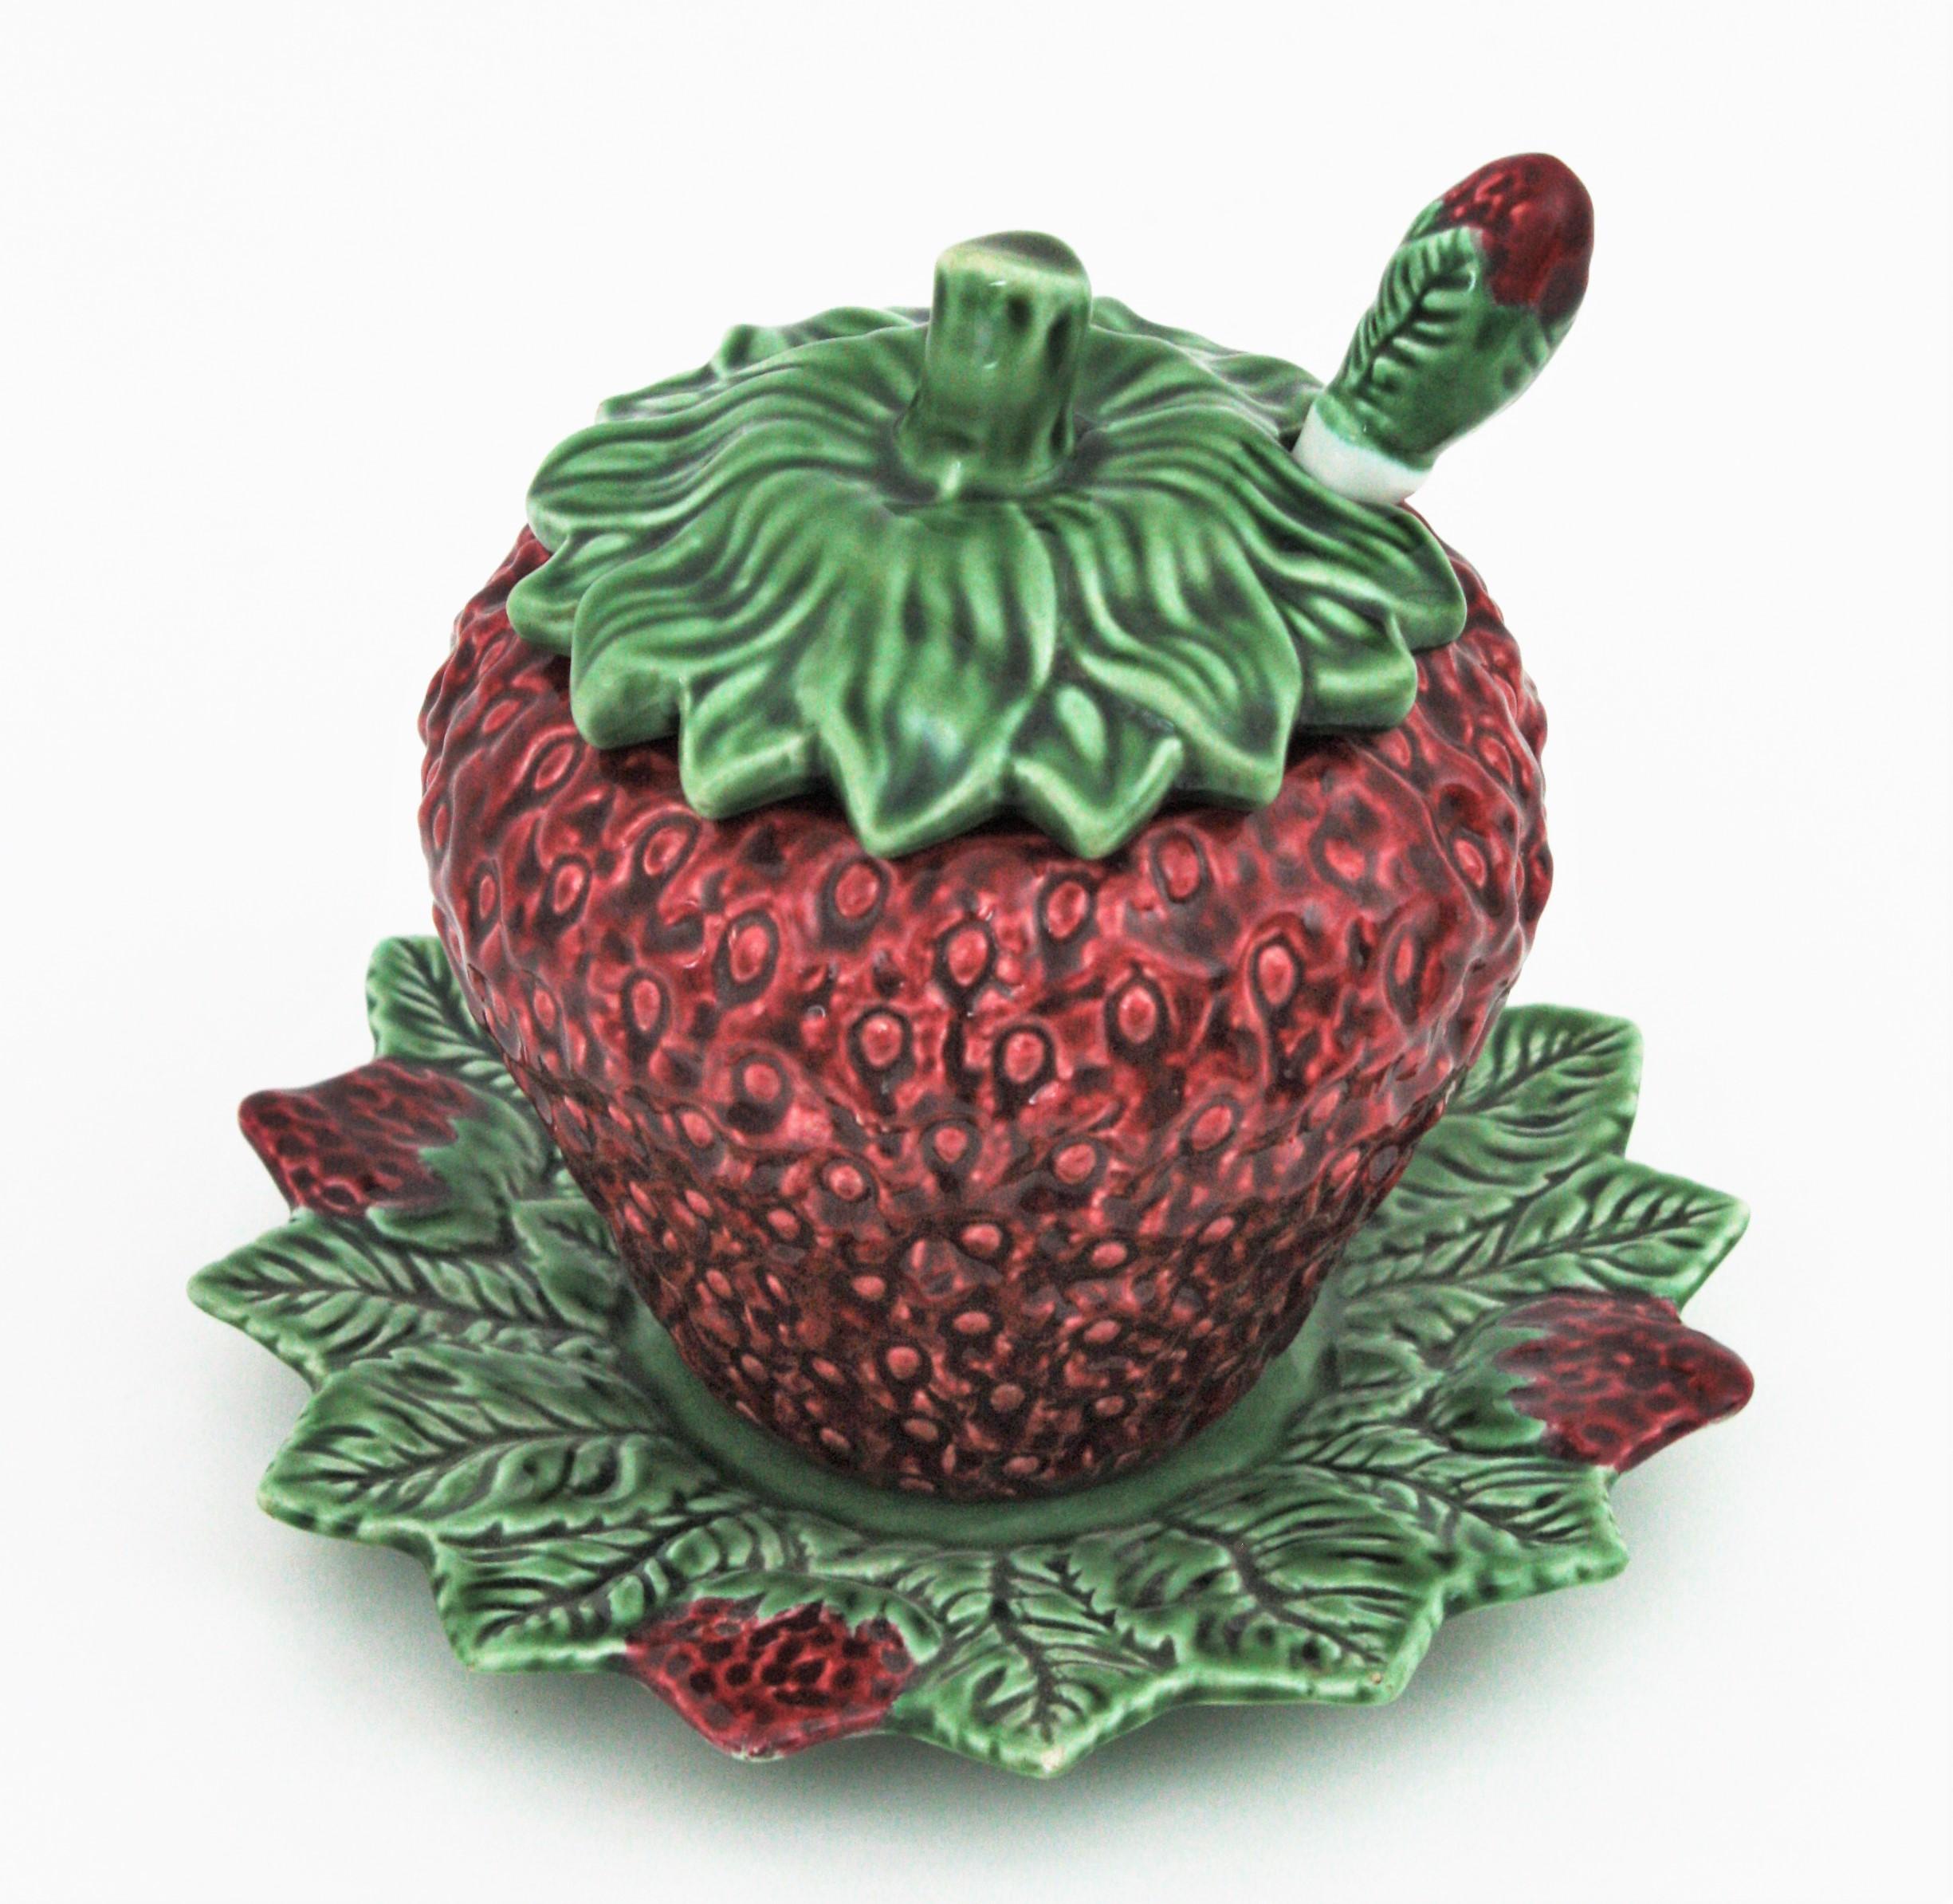 Auffällige Terrine aus Majolika-Keramik in Form einer weißen und grünen Erdbeere. Hergestellt von Bordalo Pinheiro, Portugal, 1960er Jahre.
Diese niedliche Terrine hat ein sehr realistisches Design mit Blättern auf der Oberseite. Ein blattförmiger